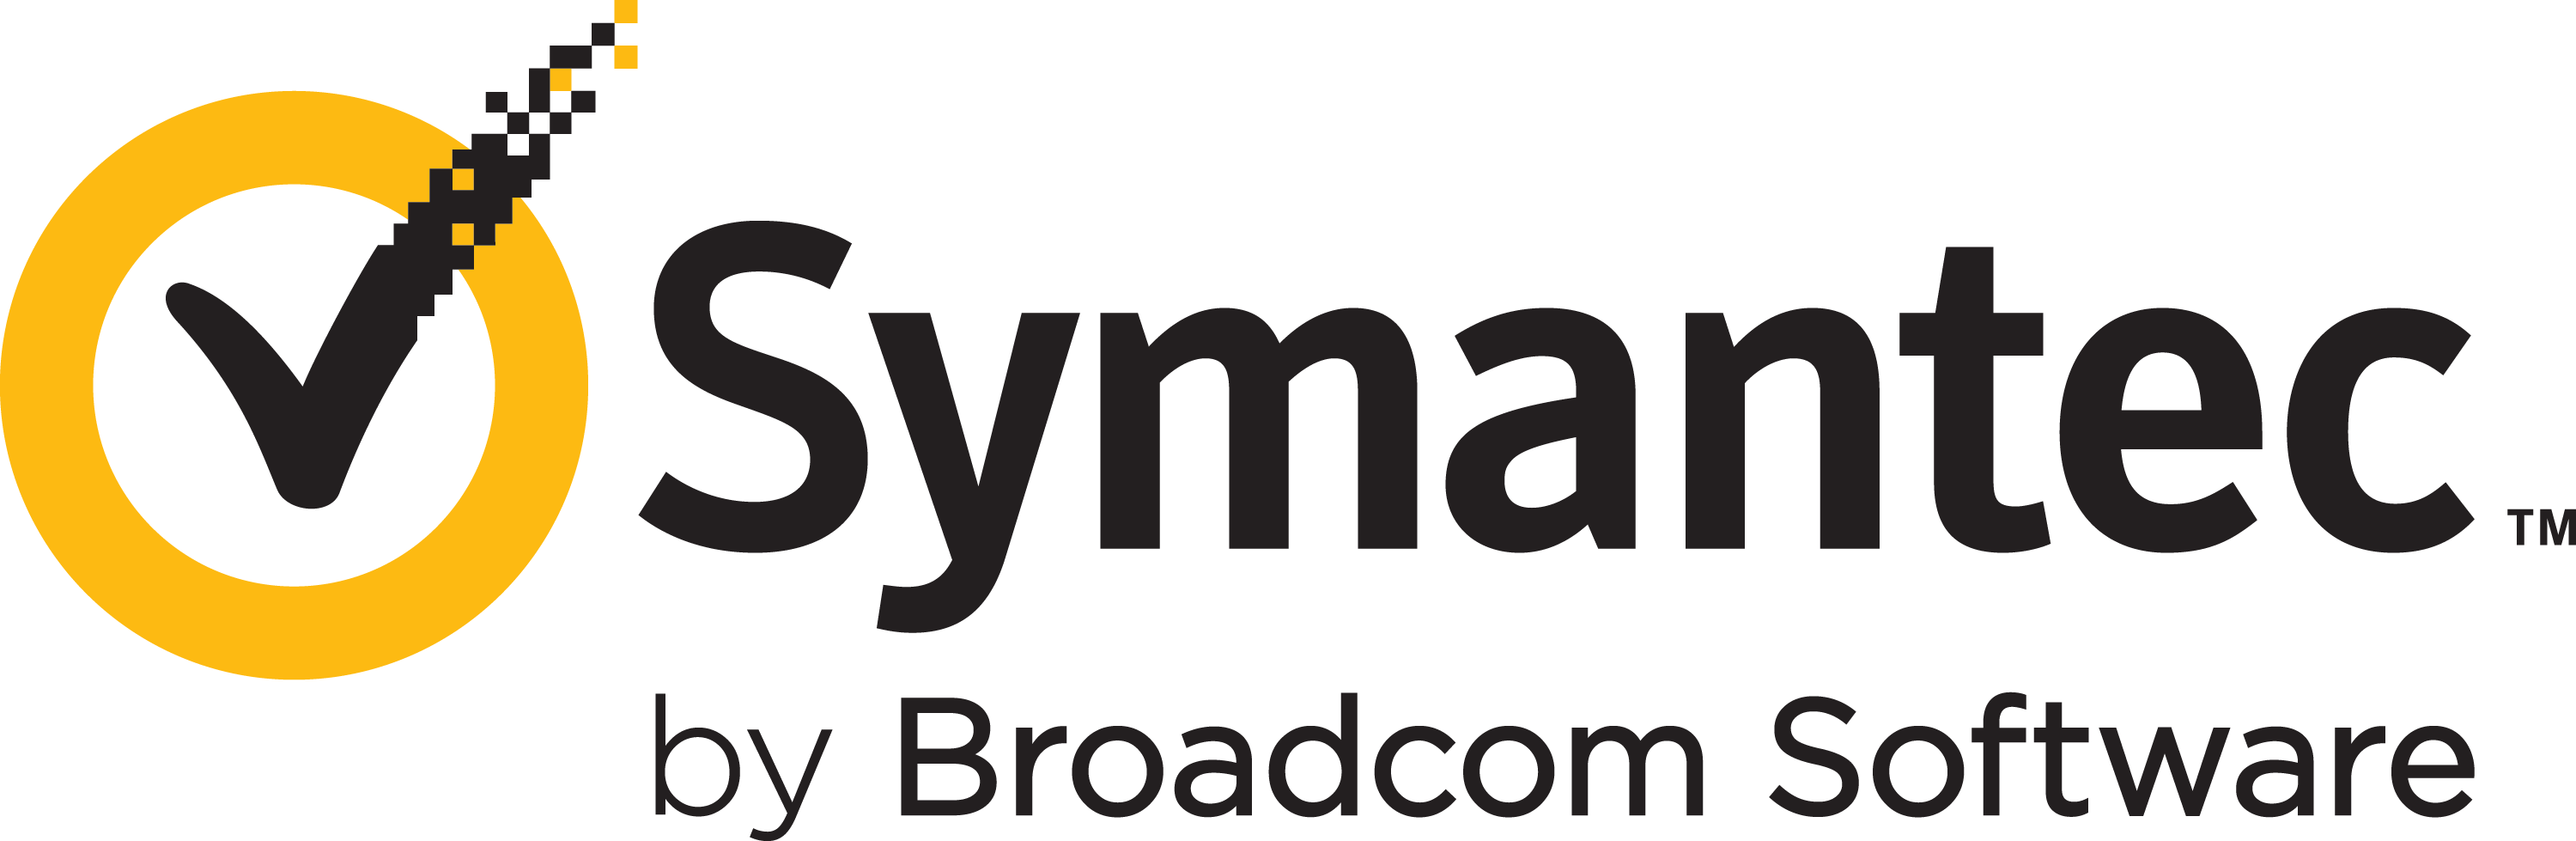 Symantec_by_Broadcom_-_Transparent.png